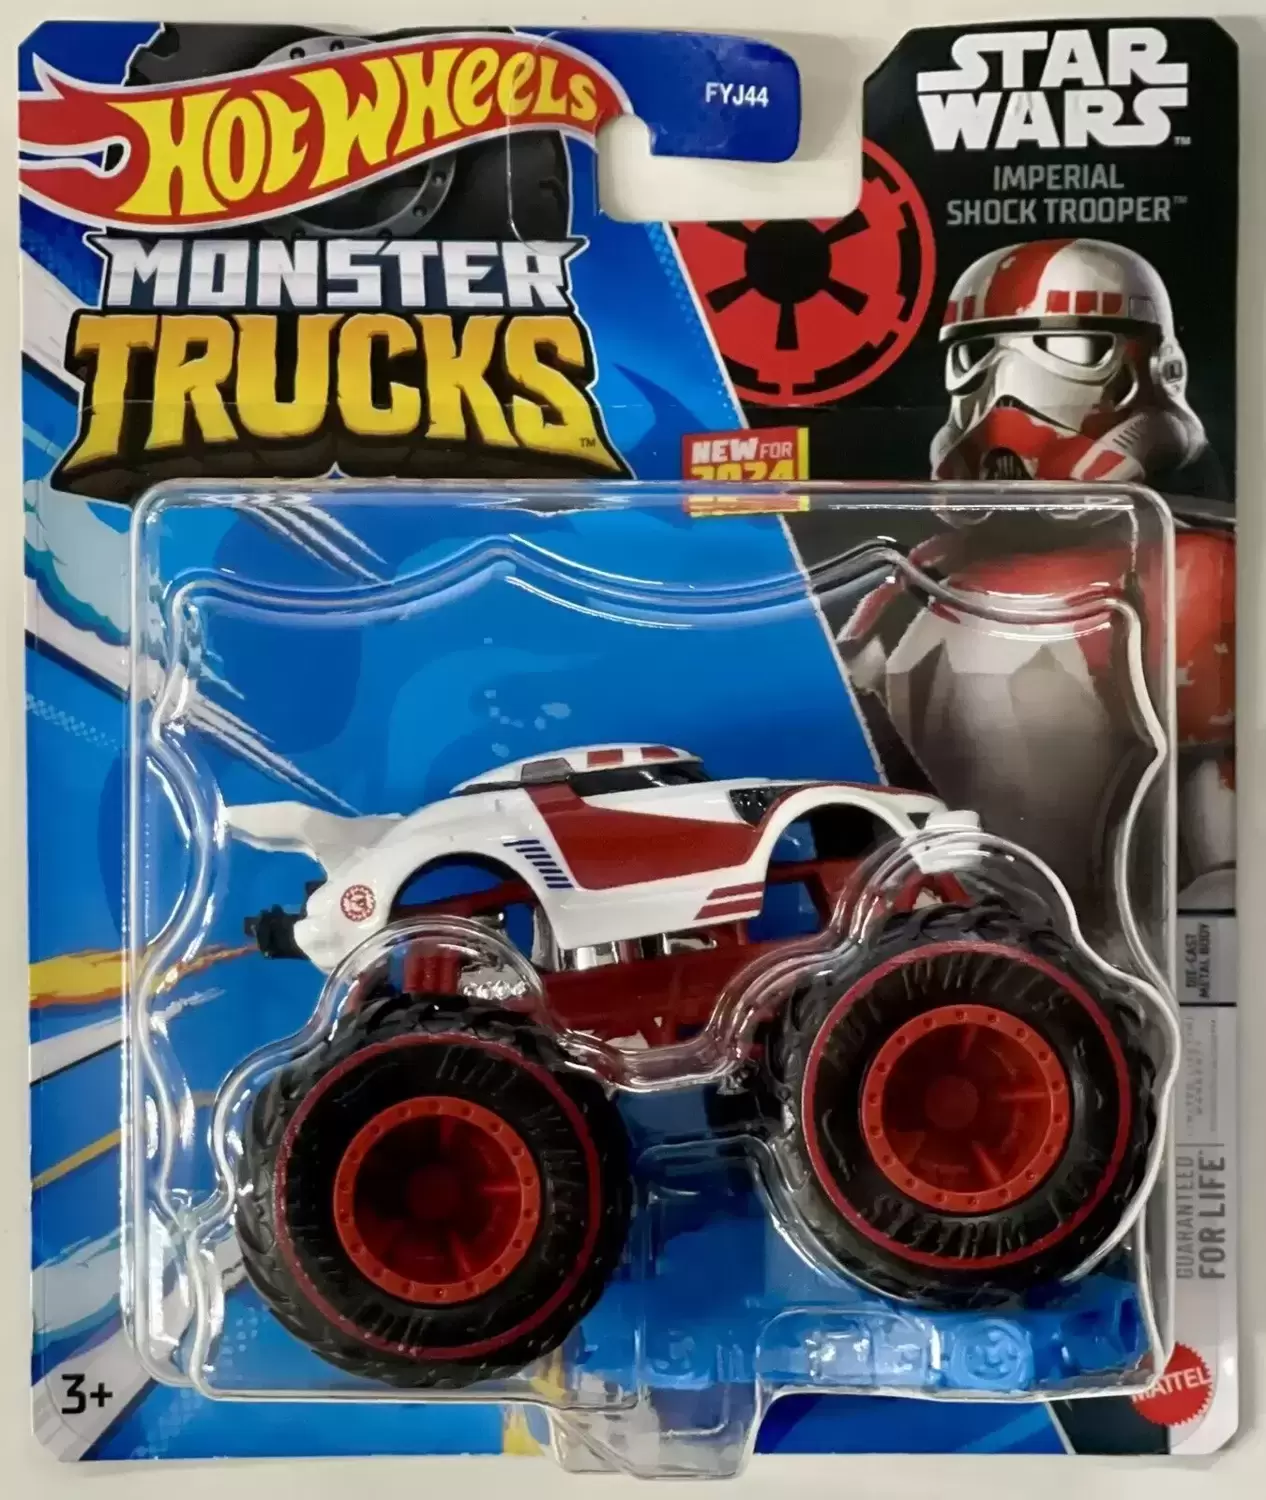 Monster Trucks - Imperial Shock Trooper